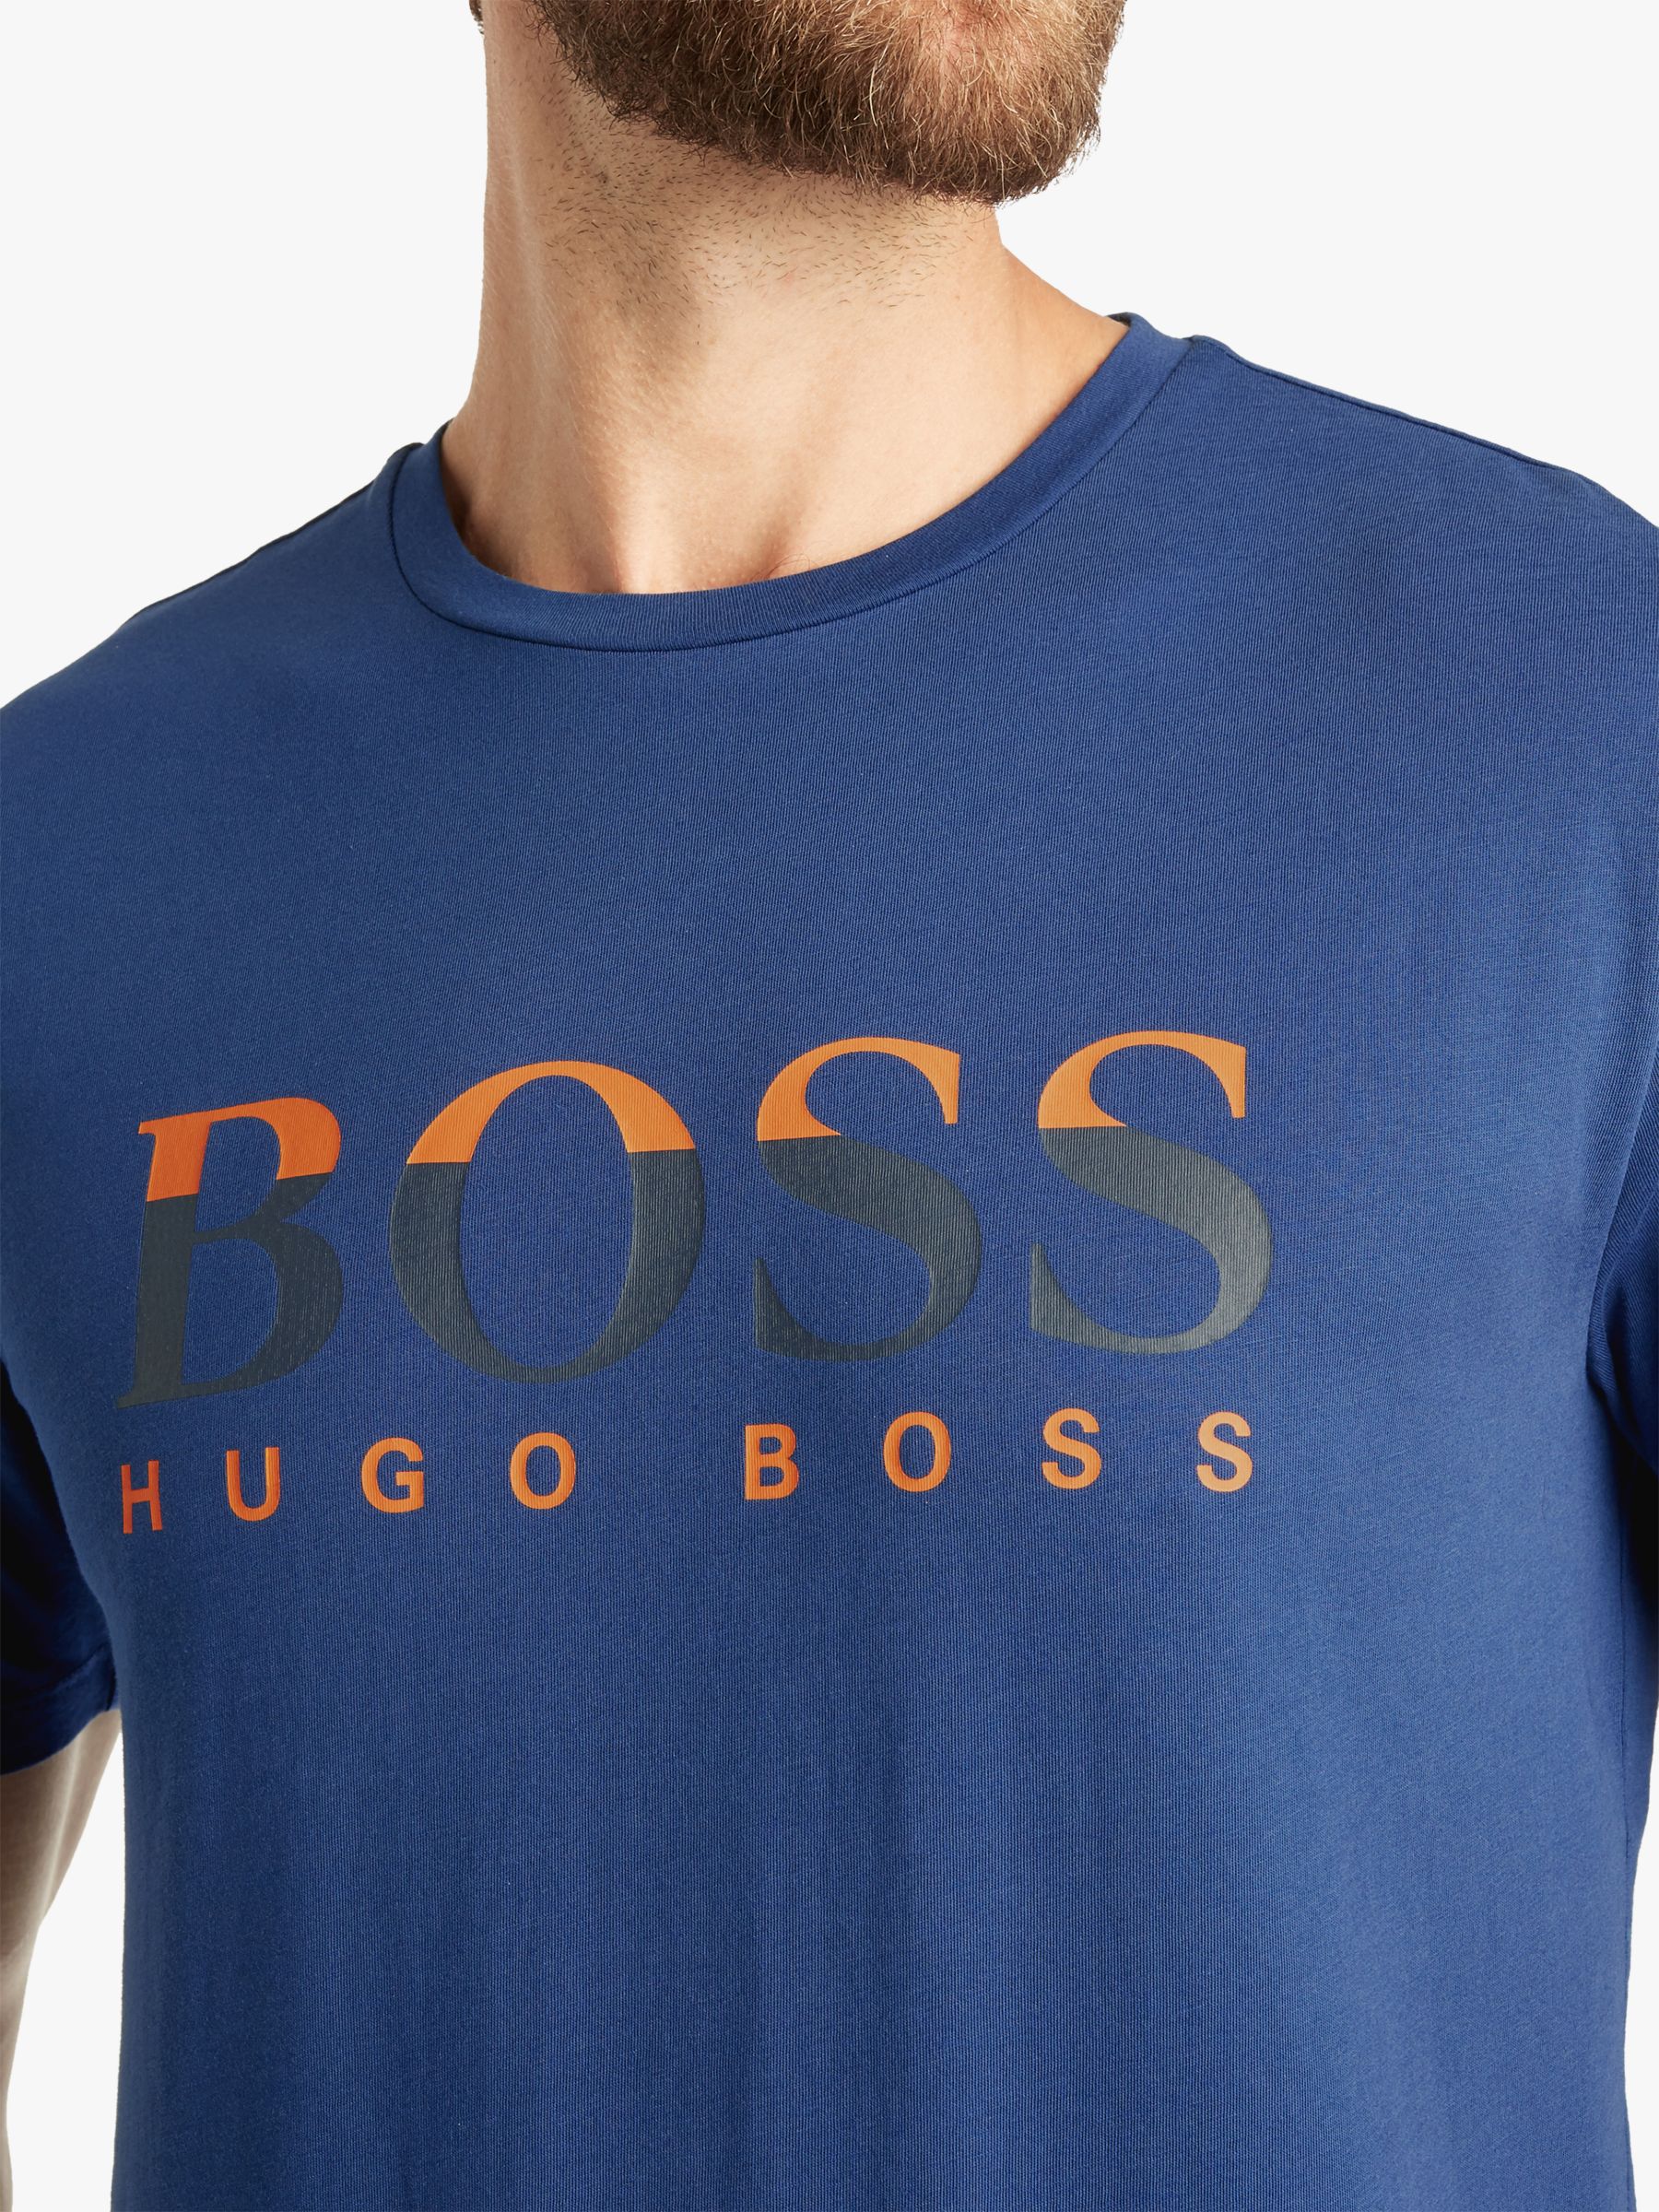 hugo boss tiburt t shirt